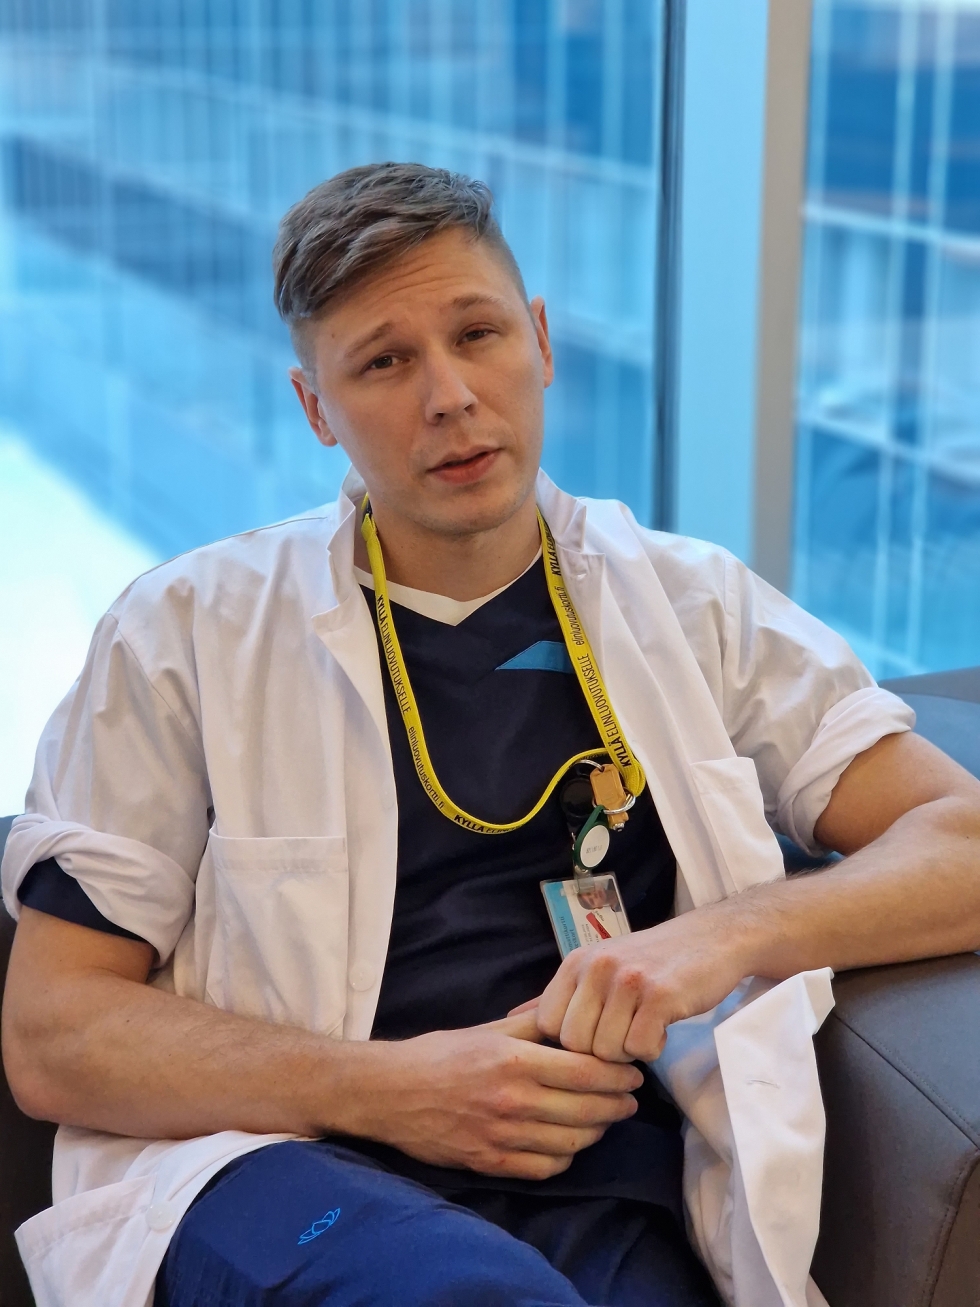 Riiassa lääkäriksi opiskeleva joensuulainen Lassi Mehtonen on parhaillaan harjoittelussa Helsingissä Meilahden sairaalassa.